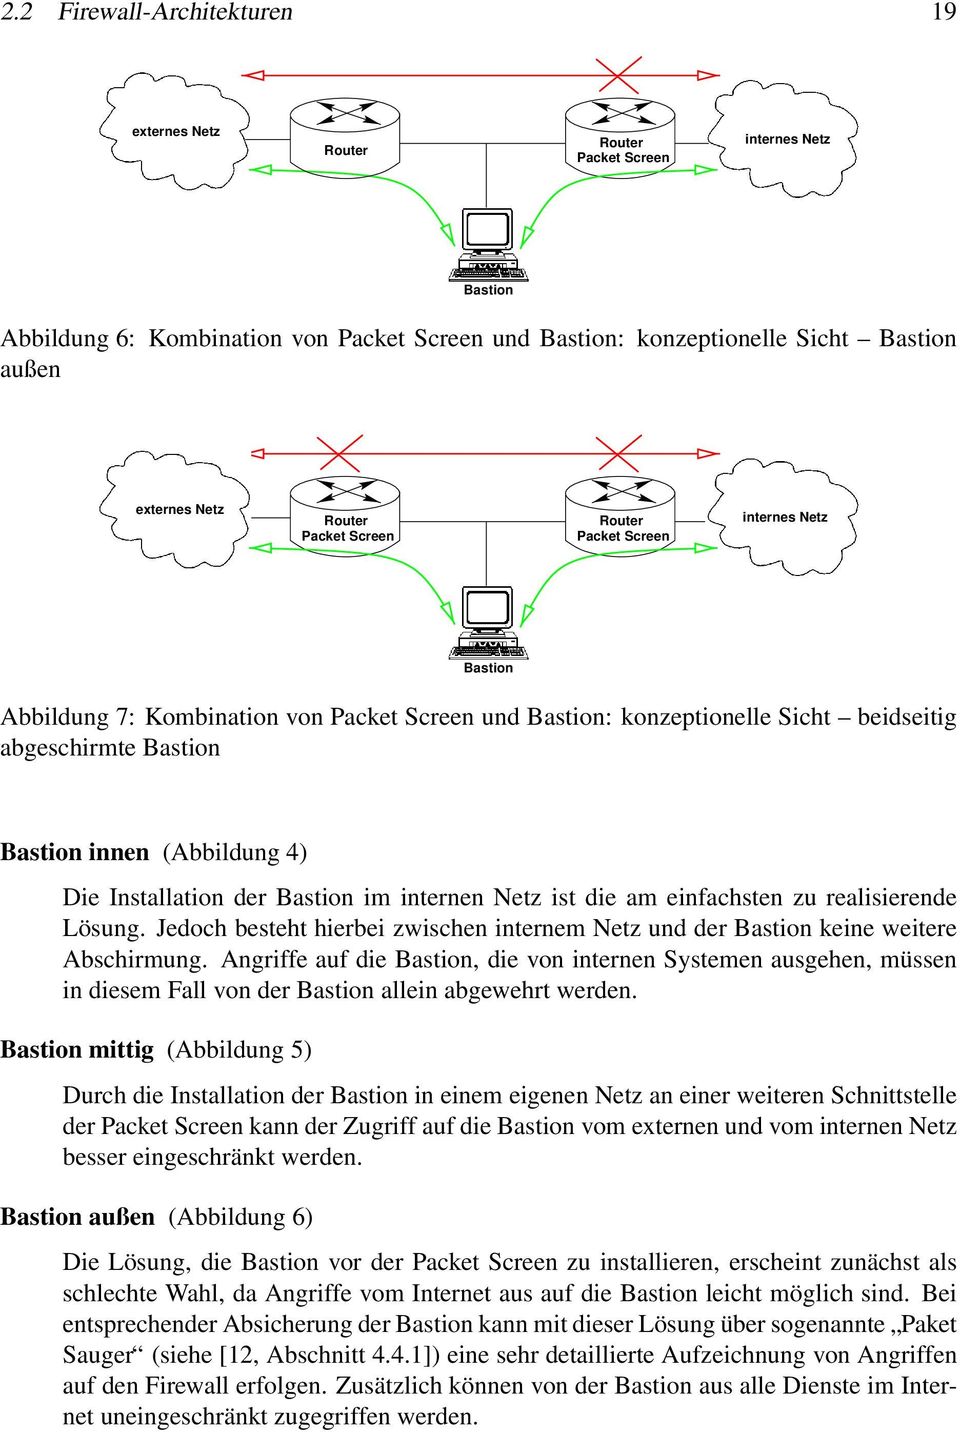 4) Die Installation der Bastion im internen Netz ist die am einfachsten zu realisierende Lösung. Jedoch besteht hierbei zwischen internem Netz und der Bastion keine weitere Abschirmung.